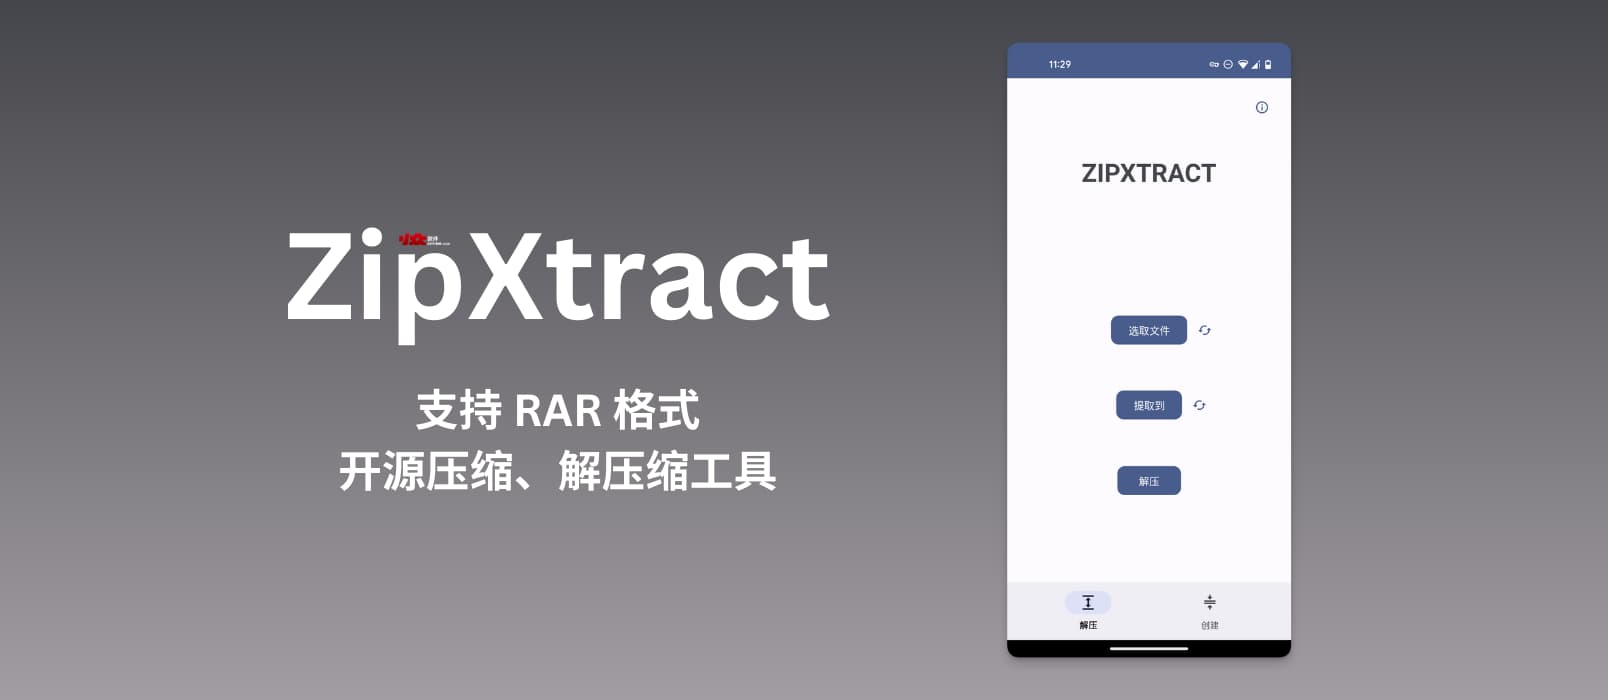 ZipXtract - 支持 RAR 格式，开源压缩、解压缩工具[Android]